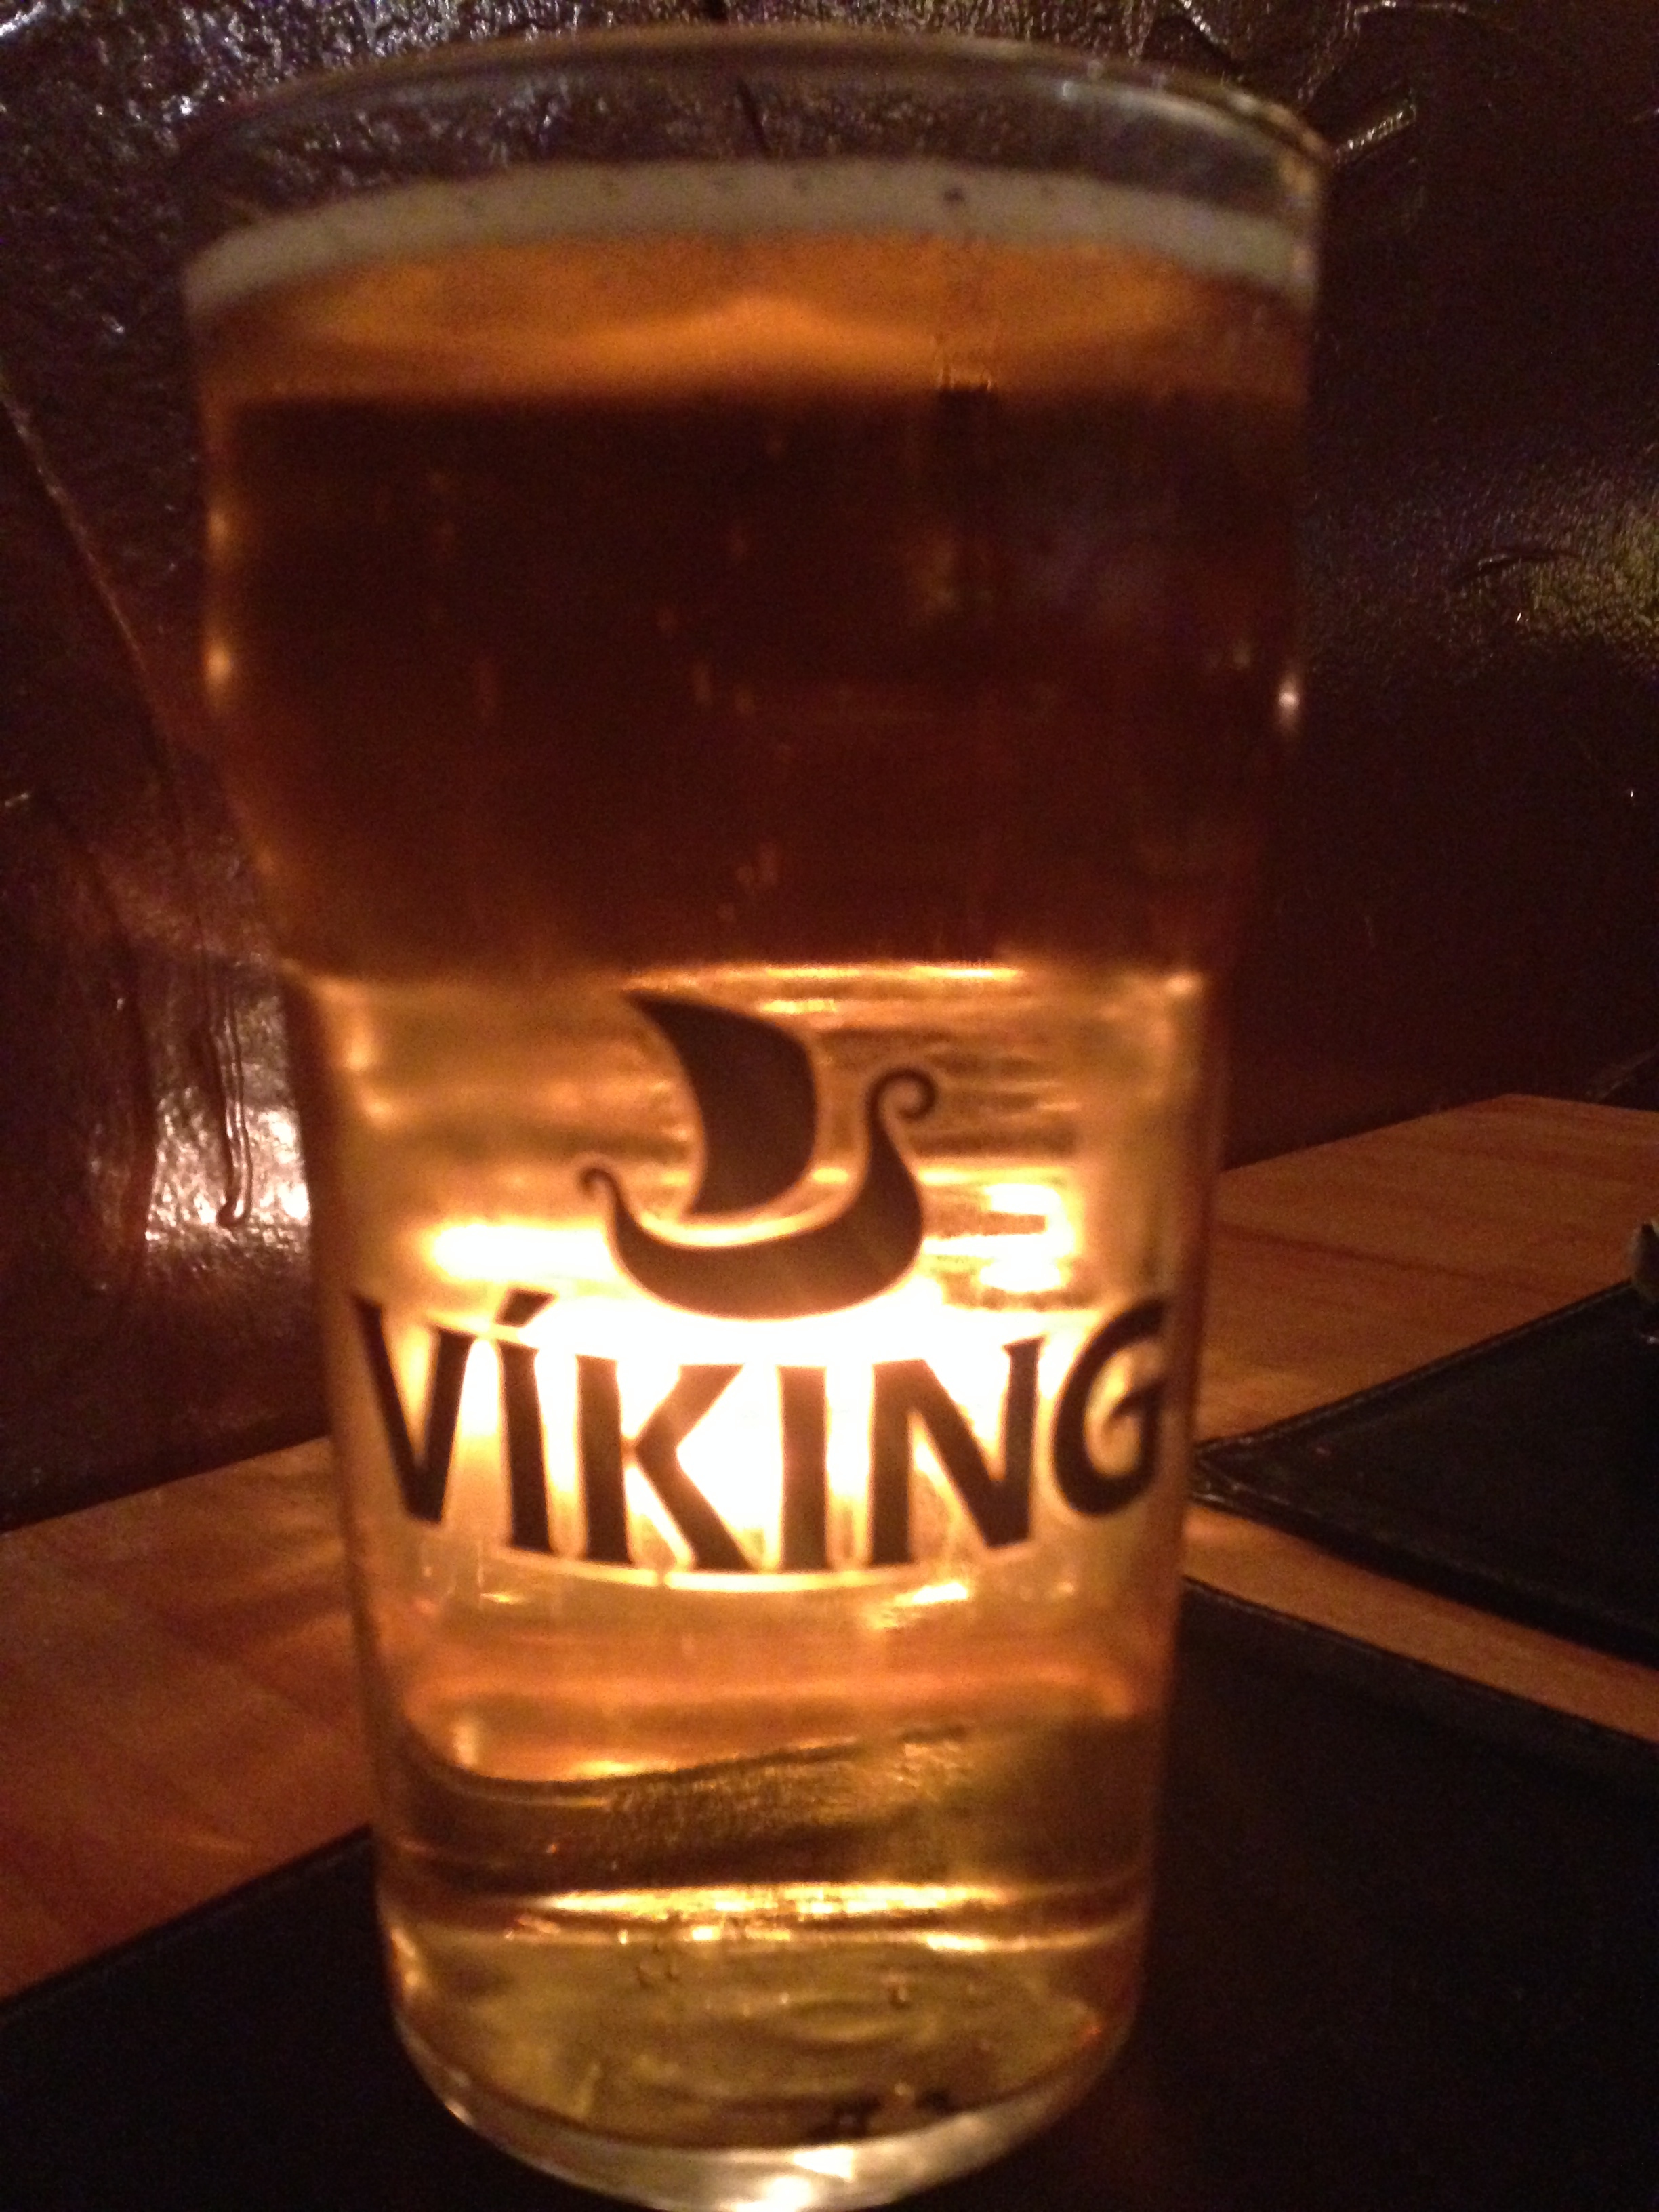  Icelandic Viking Beer - very tasty! 